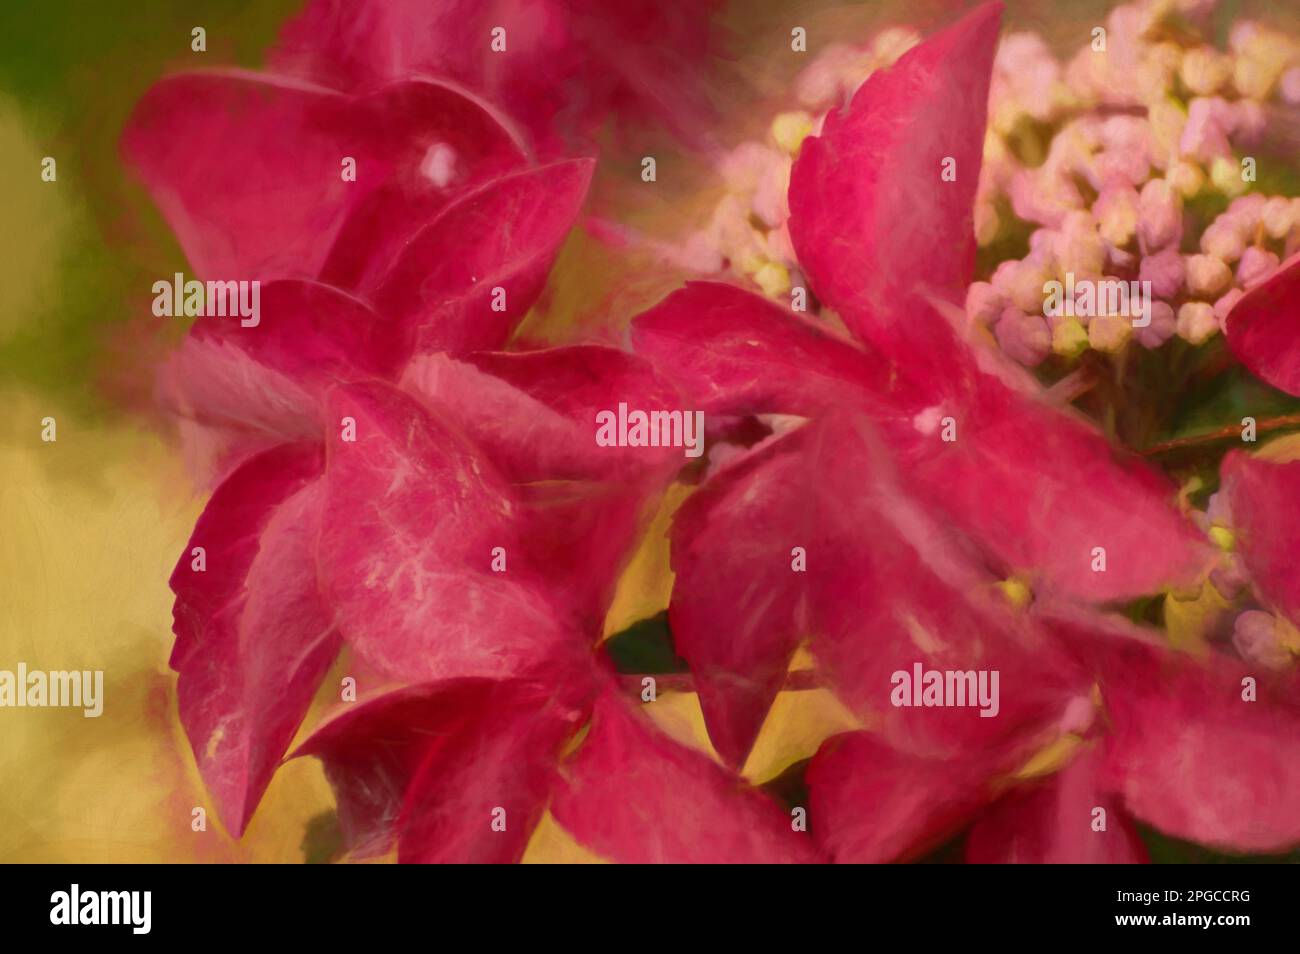 Digitale Malerei mit rosafarbenen und roten Hortensien und Blütenblättern in einem Garten mit geringer Schärfentiefe. Stockfoto